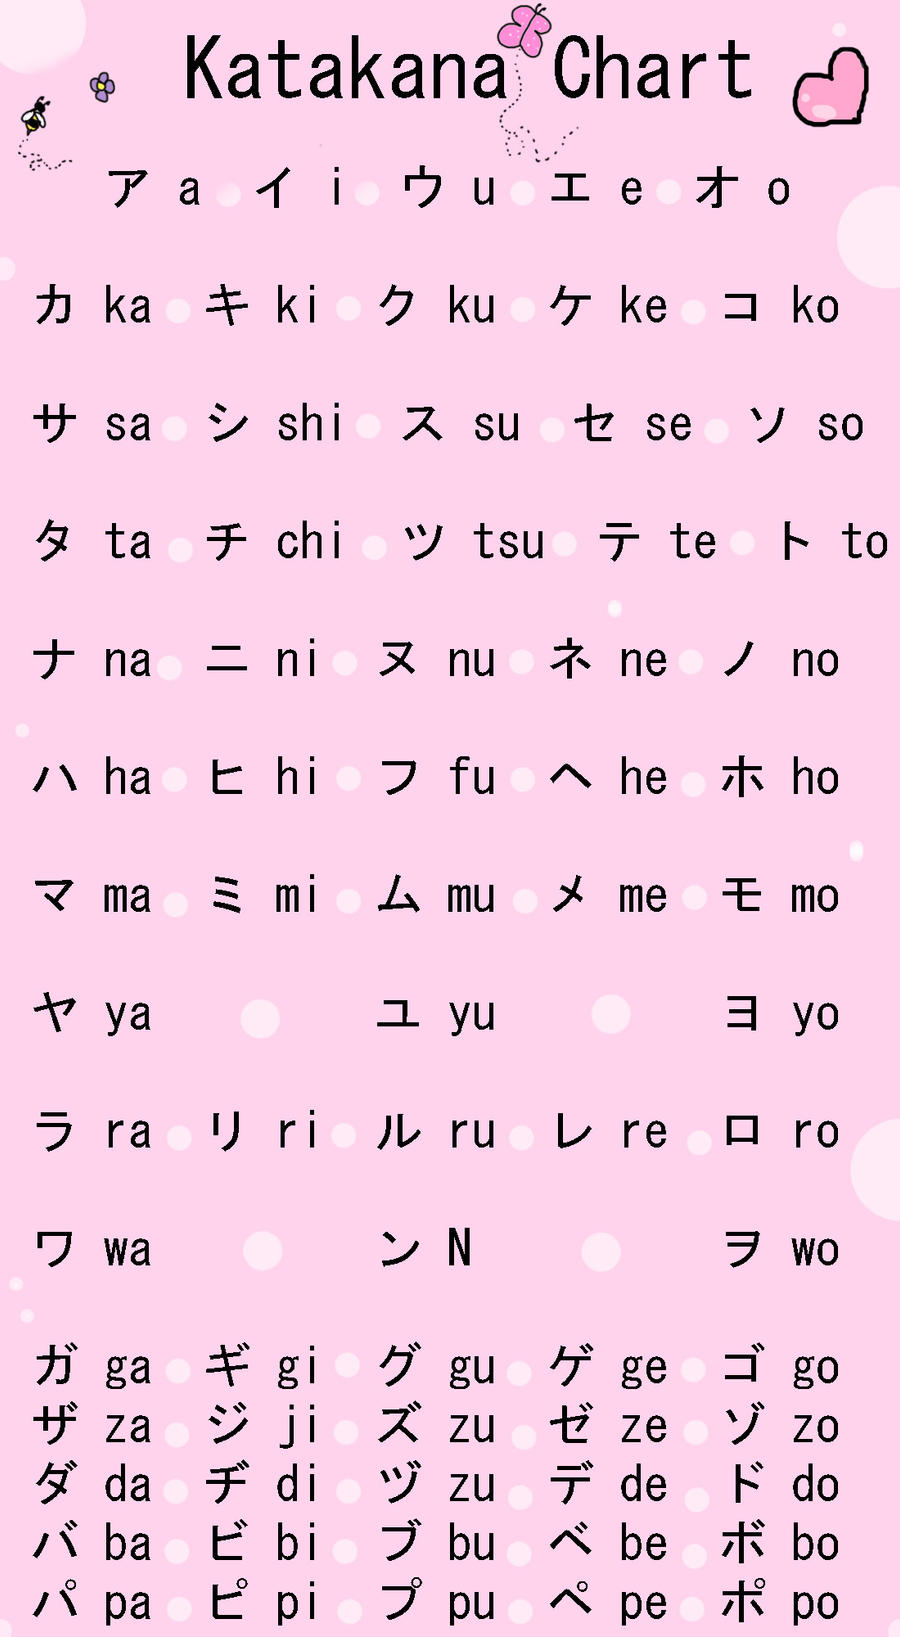 Bảng học bảng chữ cái Katakana